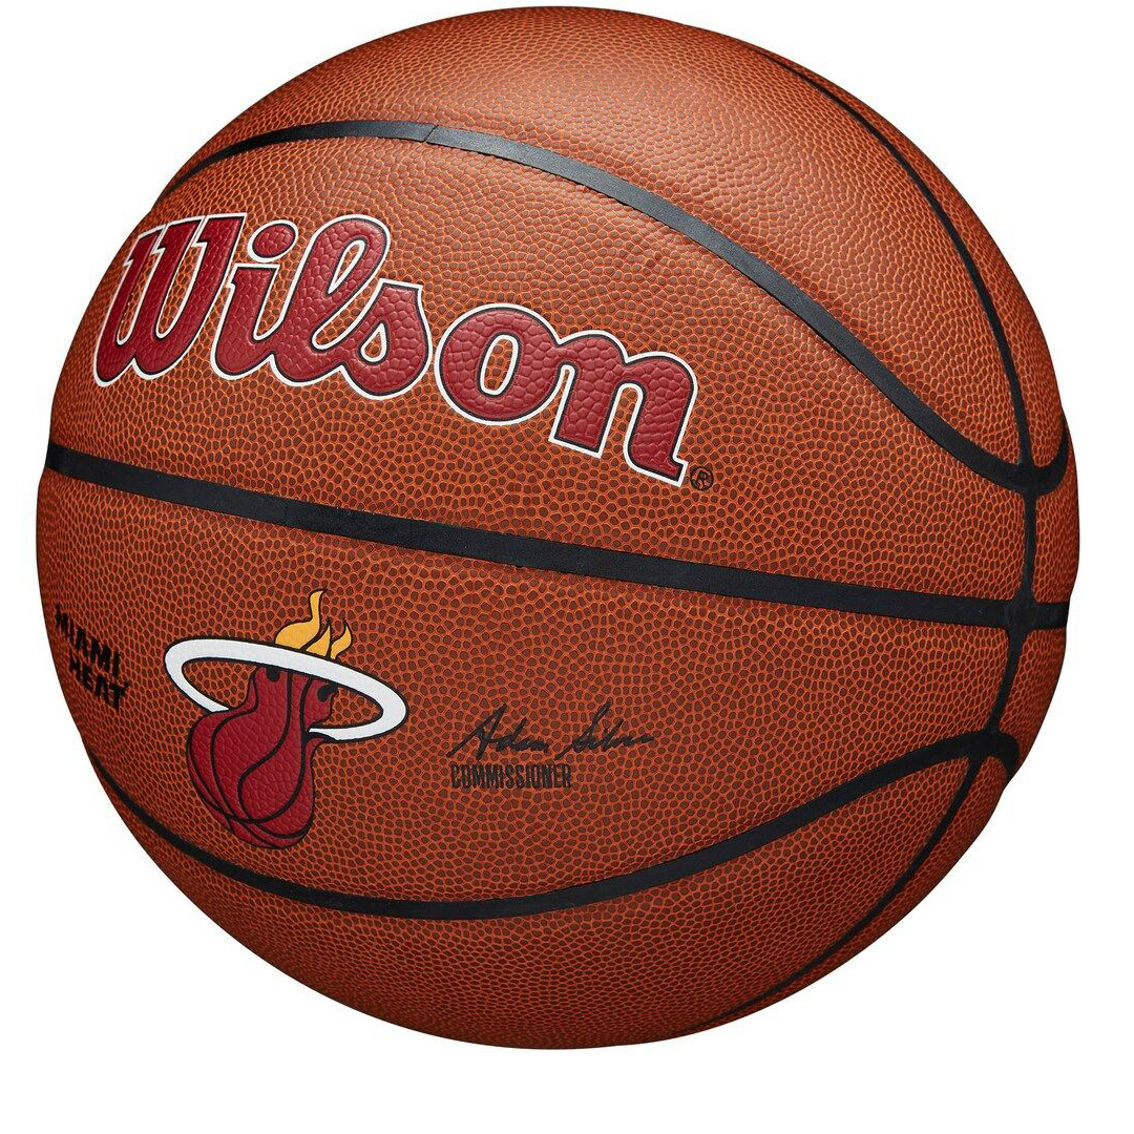 Wilson Miami Heat Wilson NBA Team Alliance Basketball - Image 4 of 4